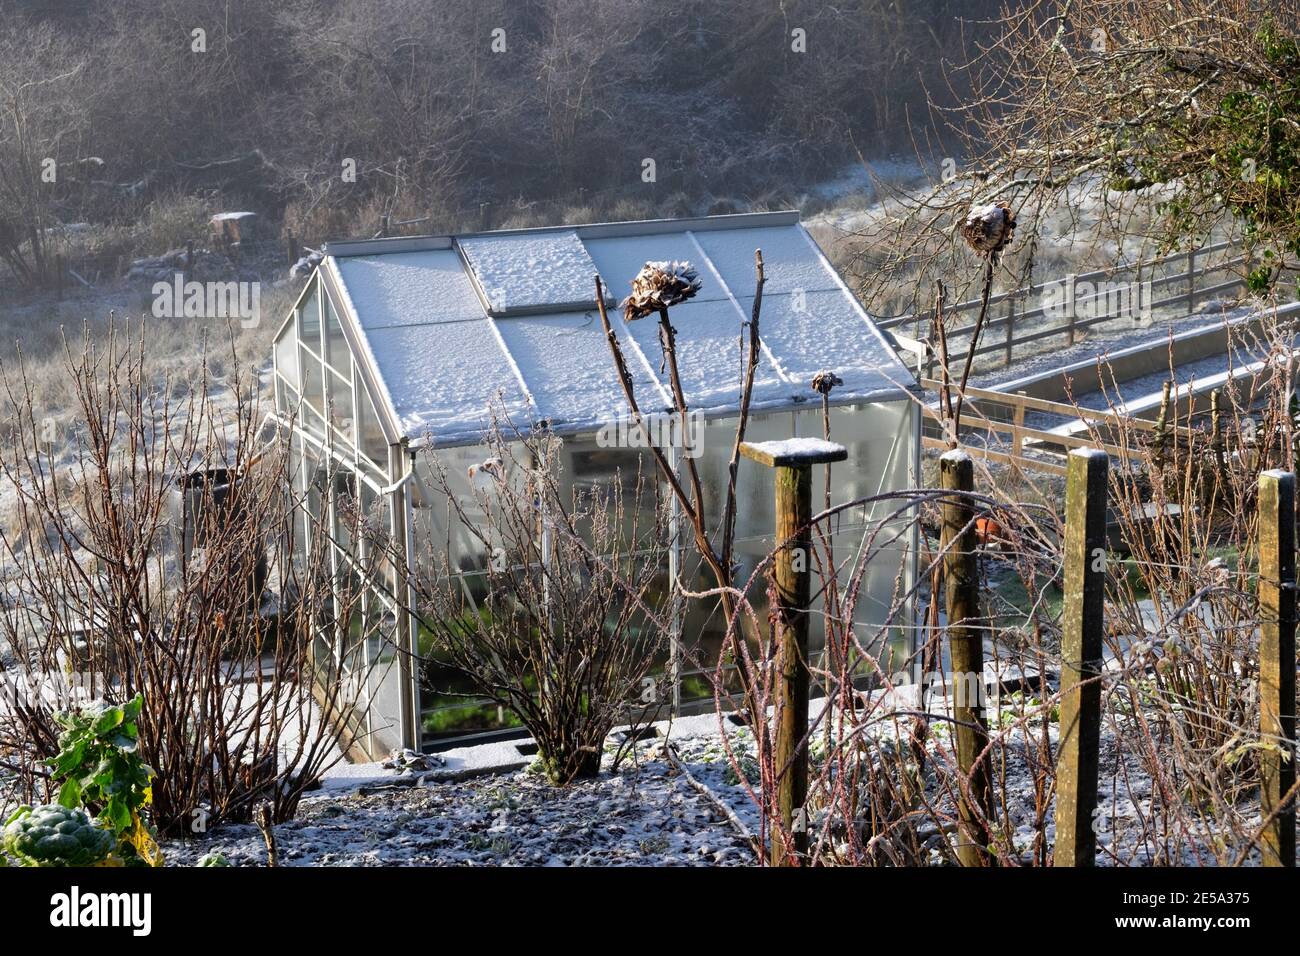 Plantes de jardin arbustes fruitiers et serre avec le gel et la neige dans le soleil d'hiver et vue sur la campagne dans le pays de Galles rural Royaume-Uni Grande-Bretagne KATHY DEWITT Banque D'Images